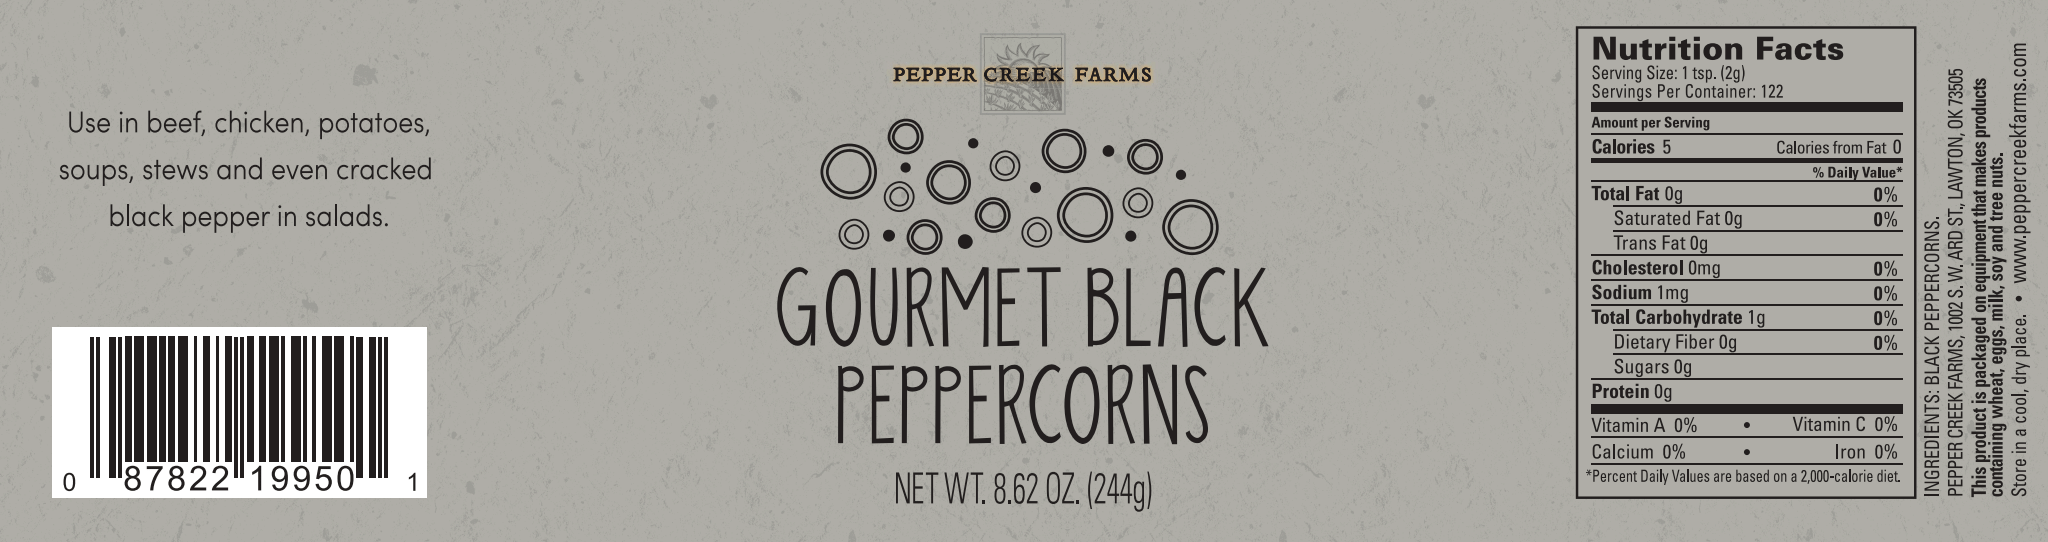 Black Pepper Pcf Stout Labels